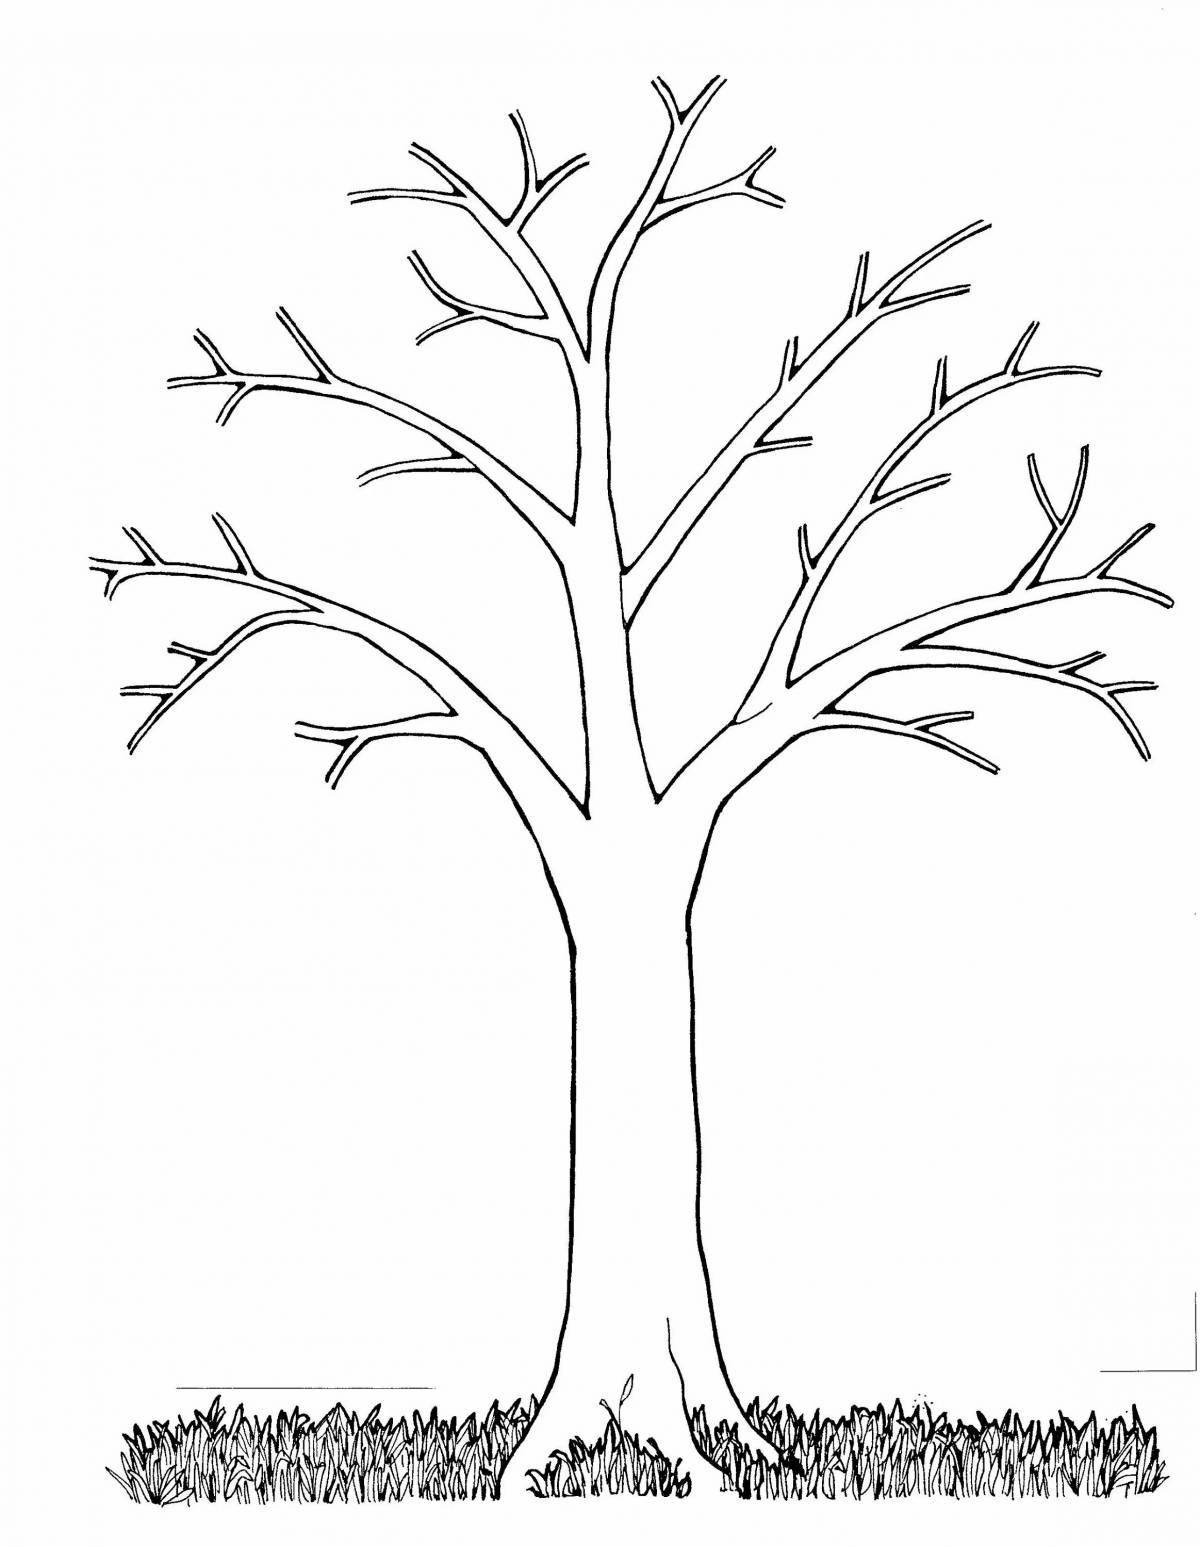 Блестящий рисунок раскидистого дерева